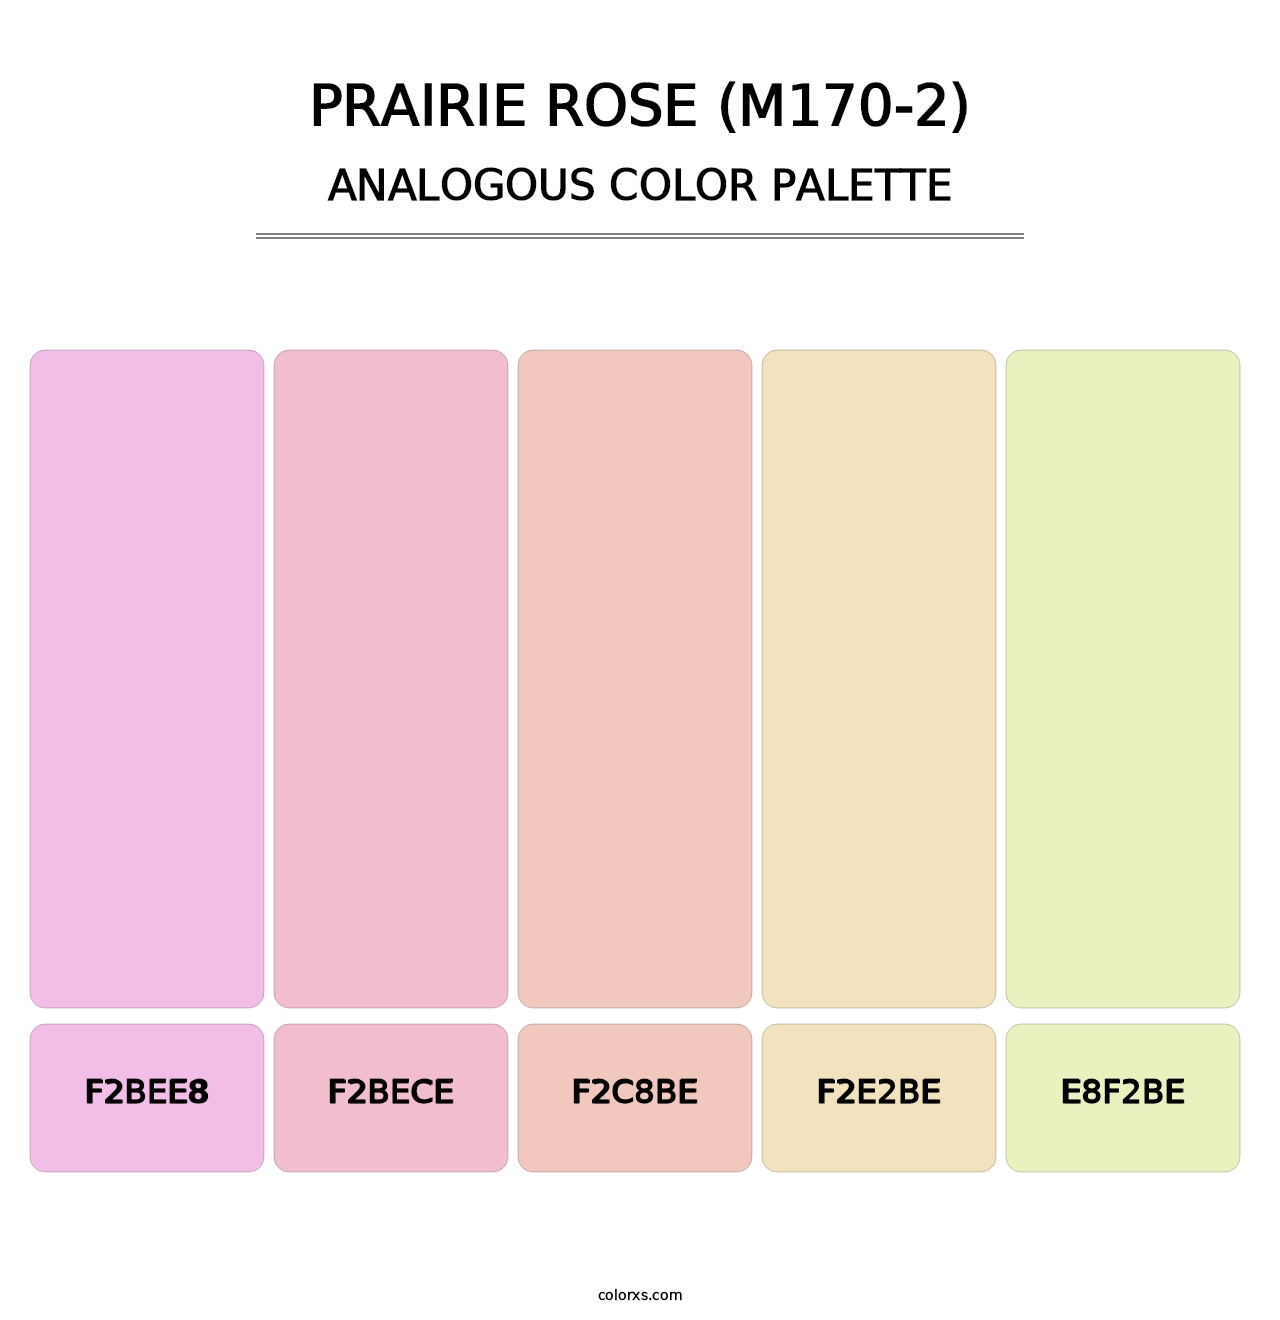 Prairie Rose (M170-2) - Analogous Color Palette